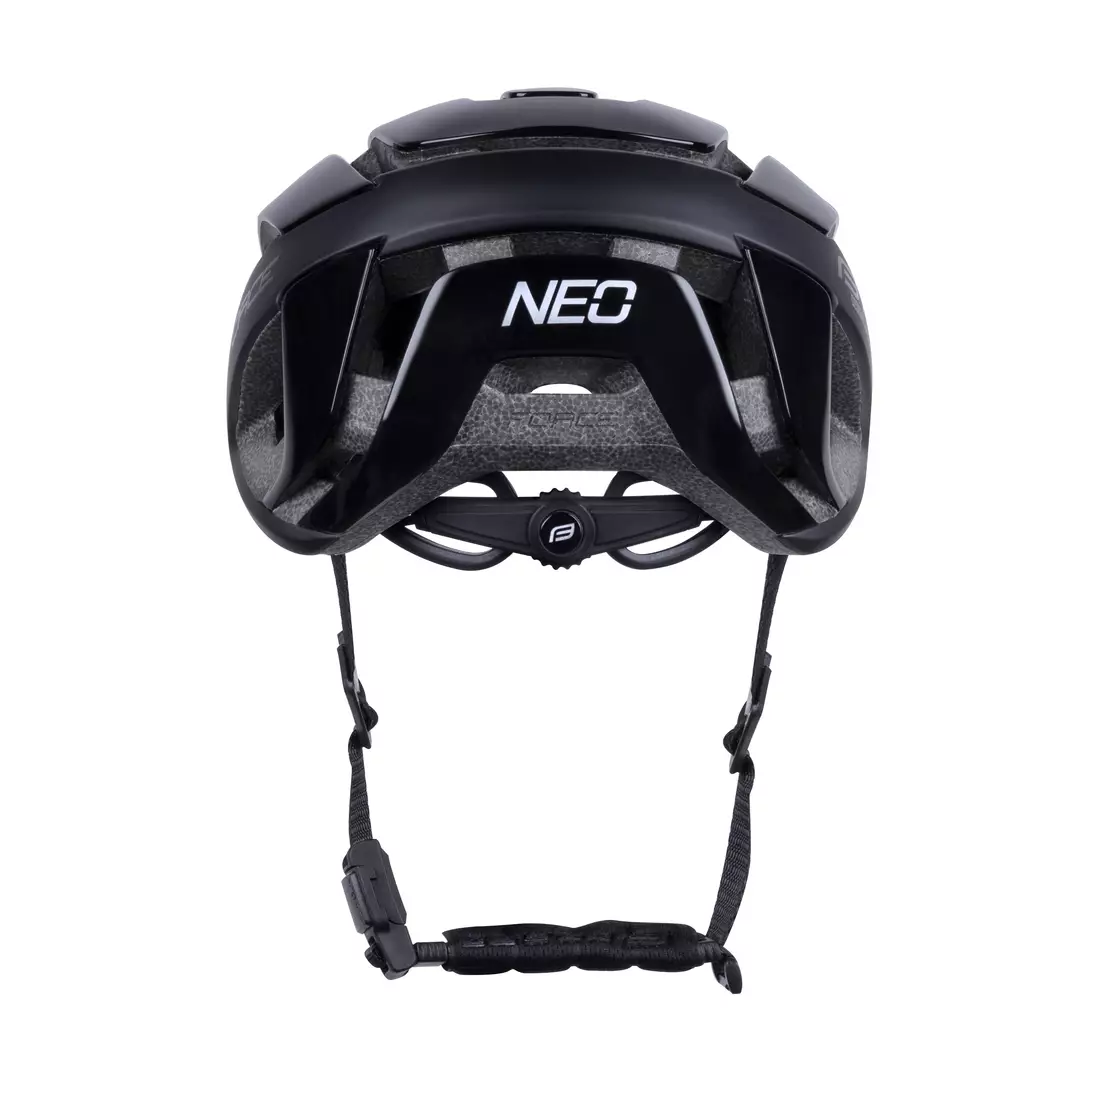 FORCE Bicycle helmet NEO, black, 902834